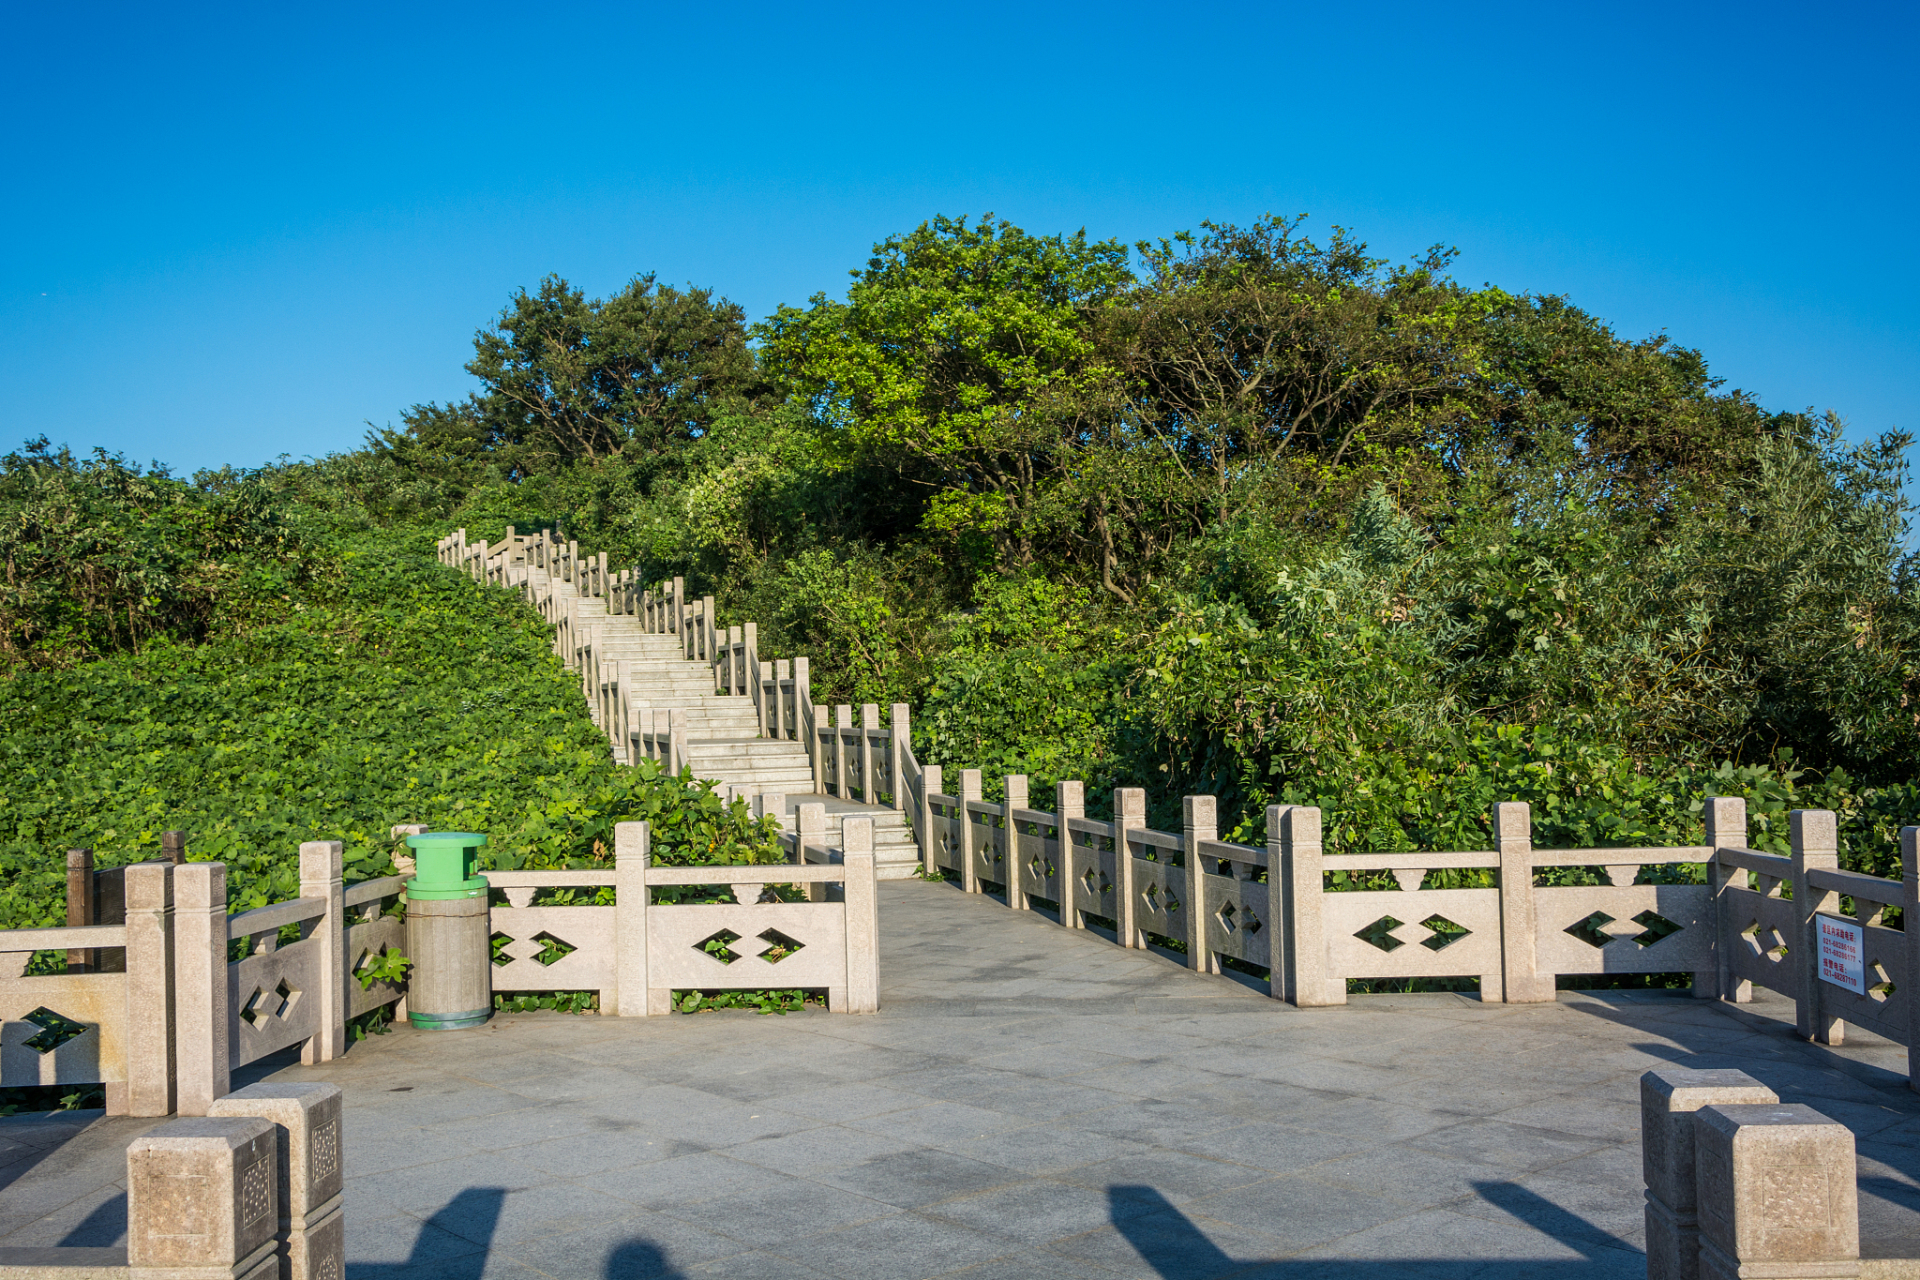 拥有南山公园,南山植物园,南滨路等多个景点,是重庆市的重要旅游名片